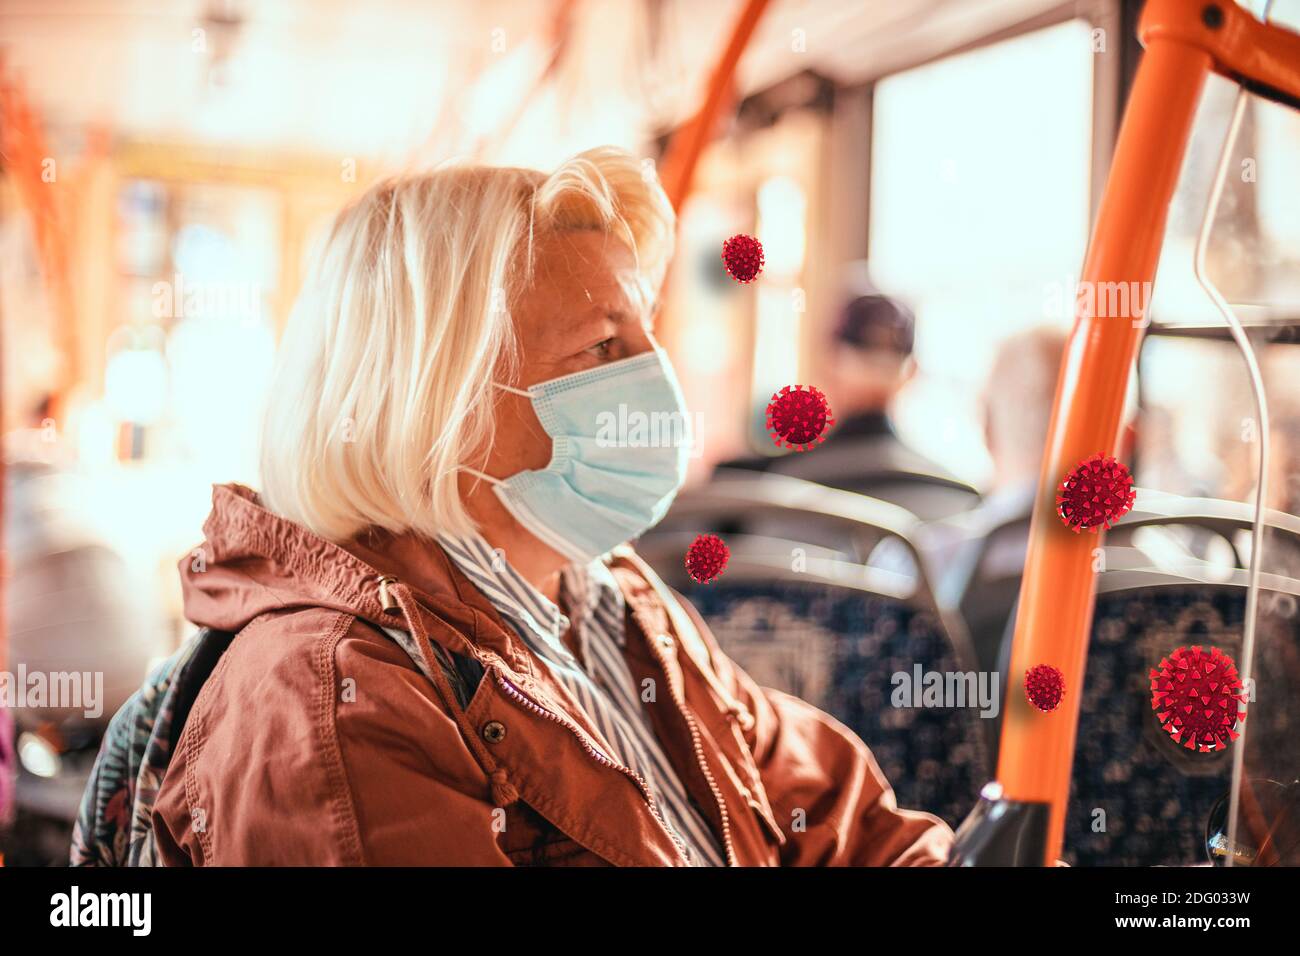 Erwachsene blonde 50 Jahre alte Frau trägt eine medizinische Schutzmaske im öffentlichen Verkehr während der Pandemie. Stockfoto